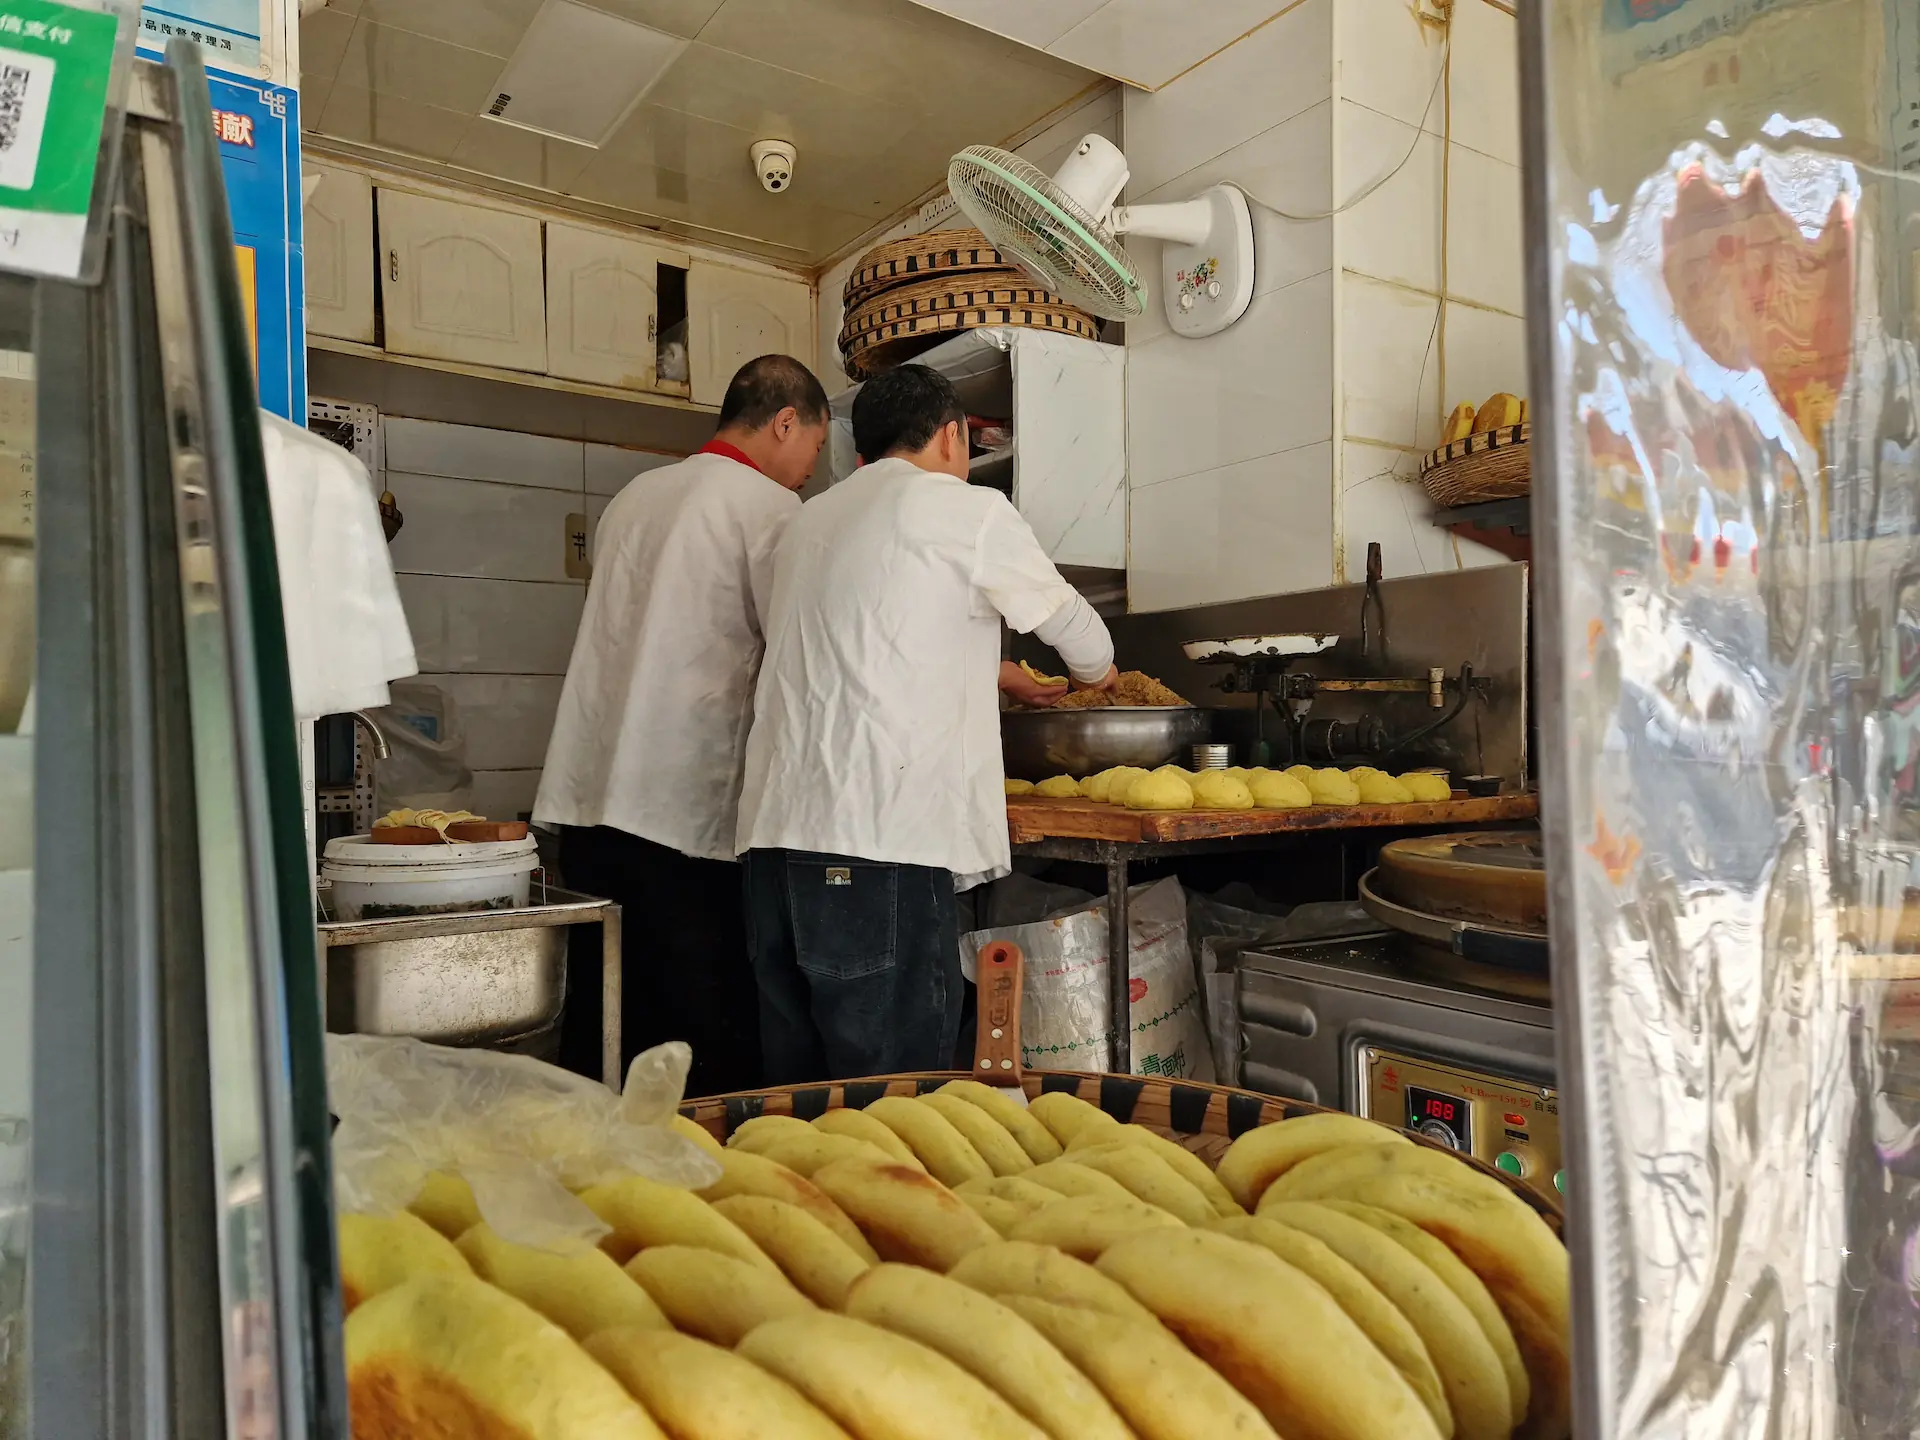 Deux hommes de dos dans une petite boulangerie préparent des bǐng, petits pains plats fourrés qu'on voit à l'avant de la photo